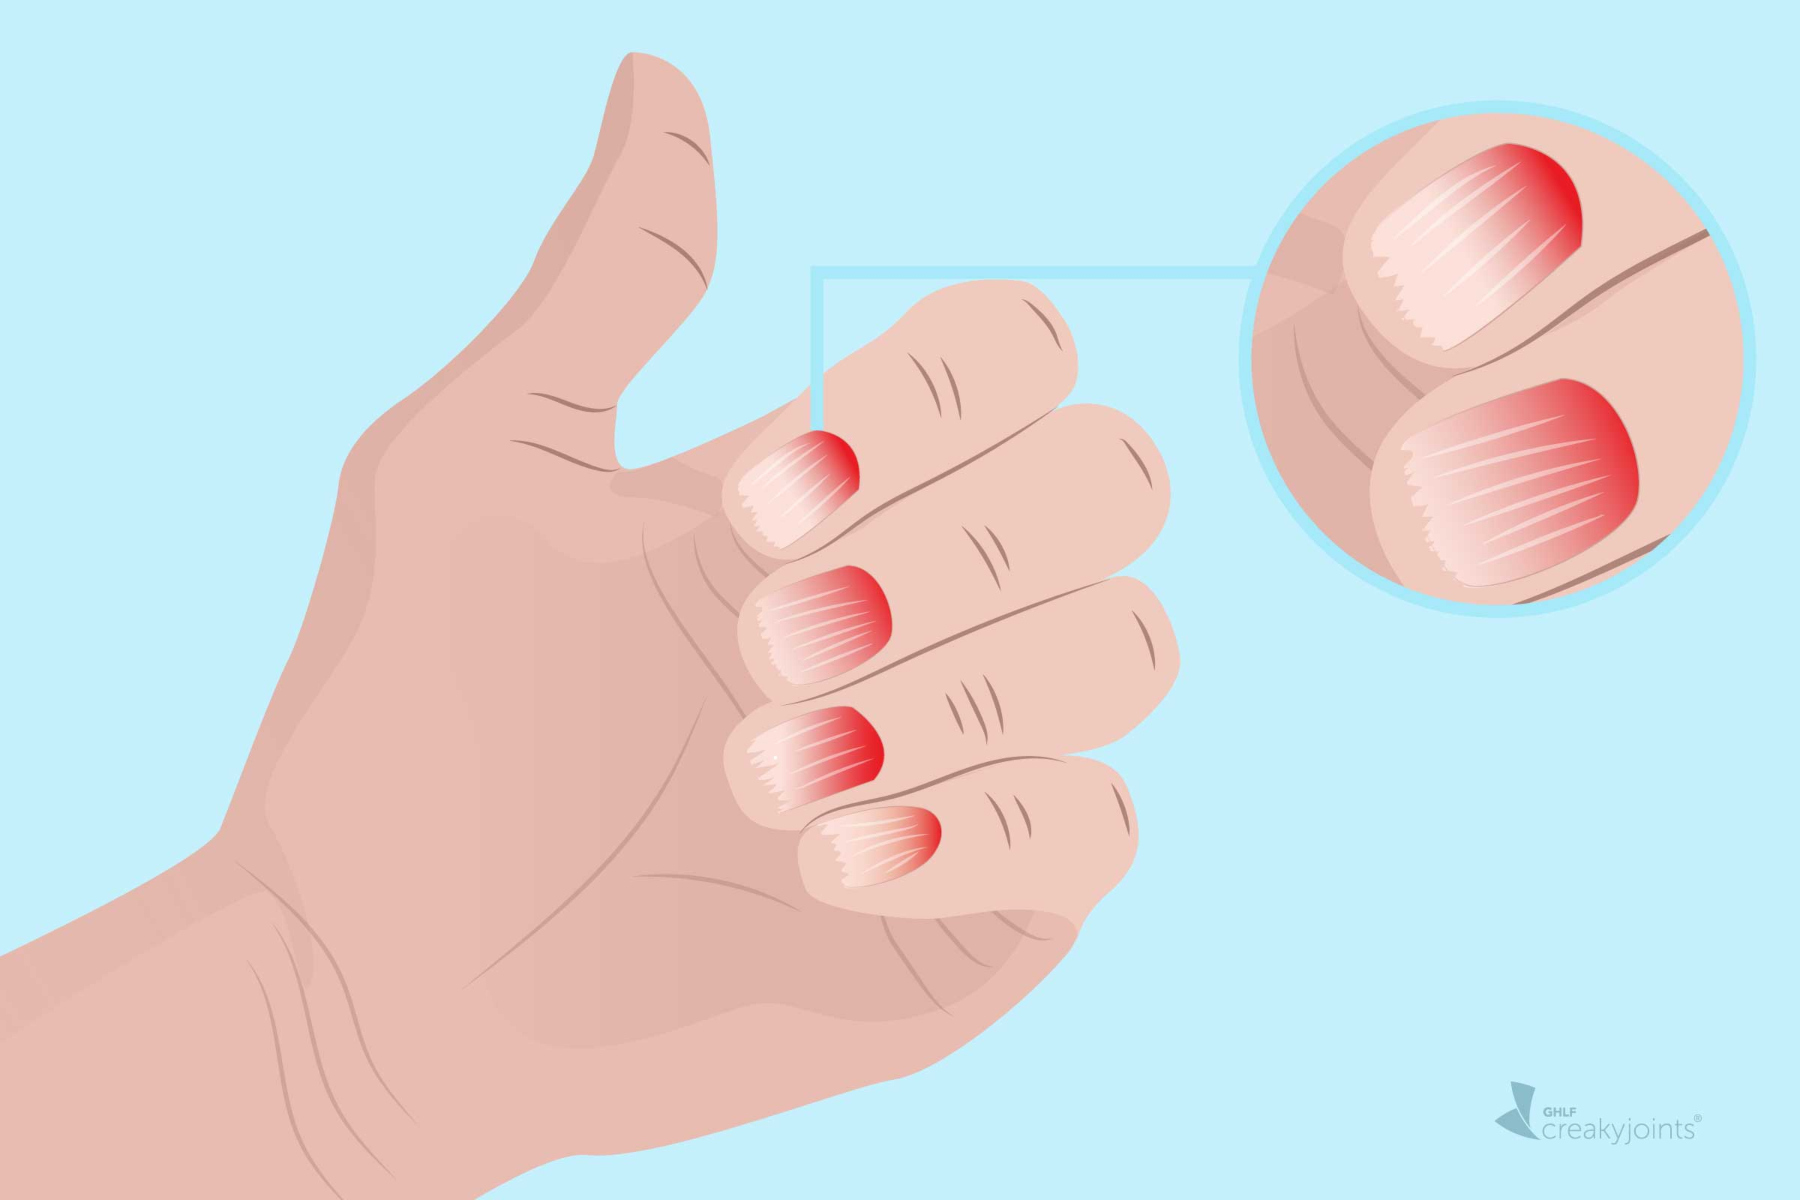 Ψωριασική αθρίτιδα: Σημάδια ψωριασικής αρθρίτιδας στα χέρια, τα δάχτυλα και τα νύχια σας